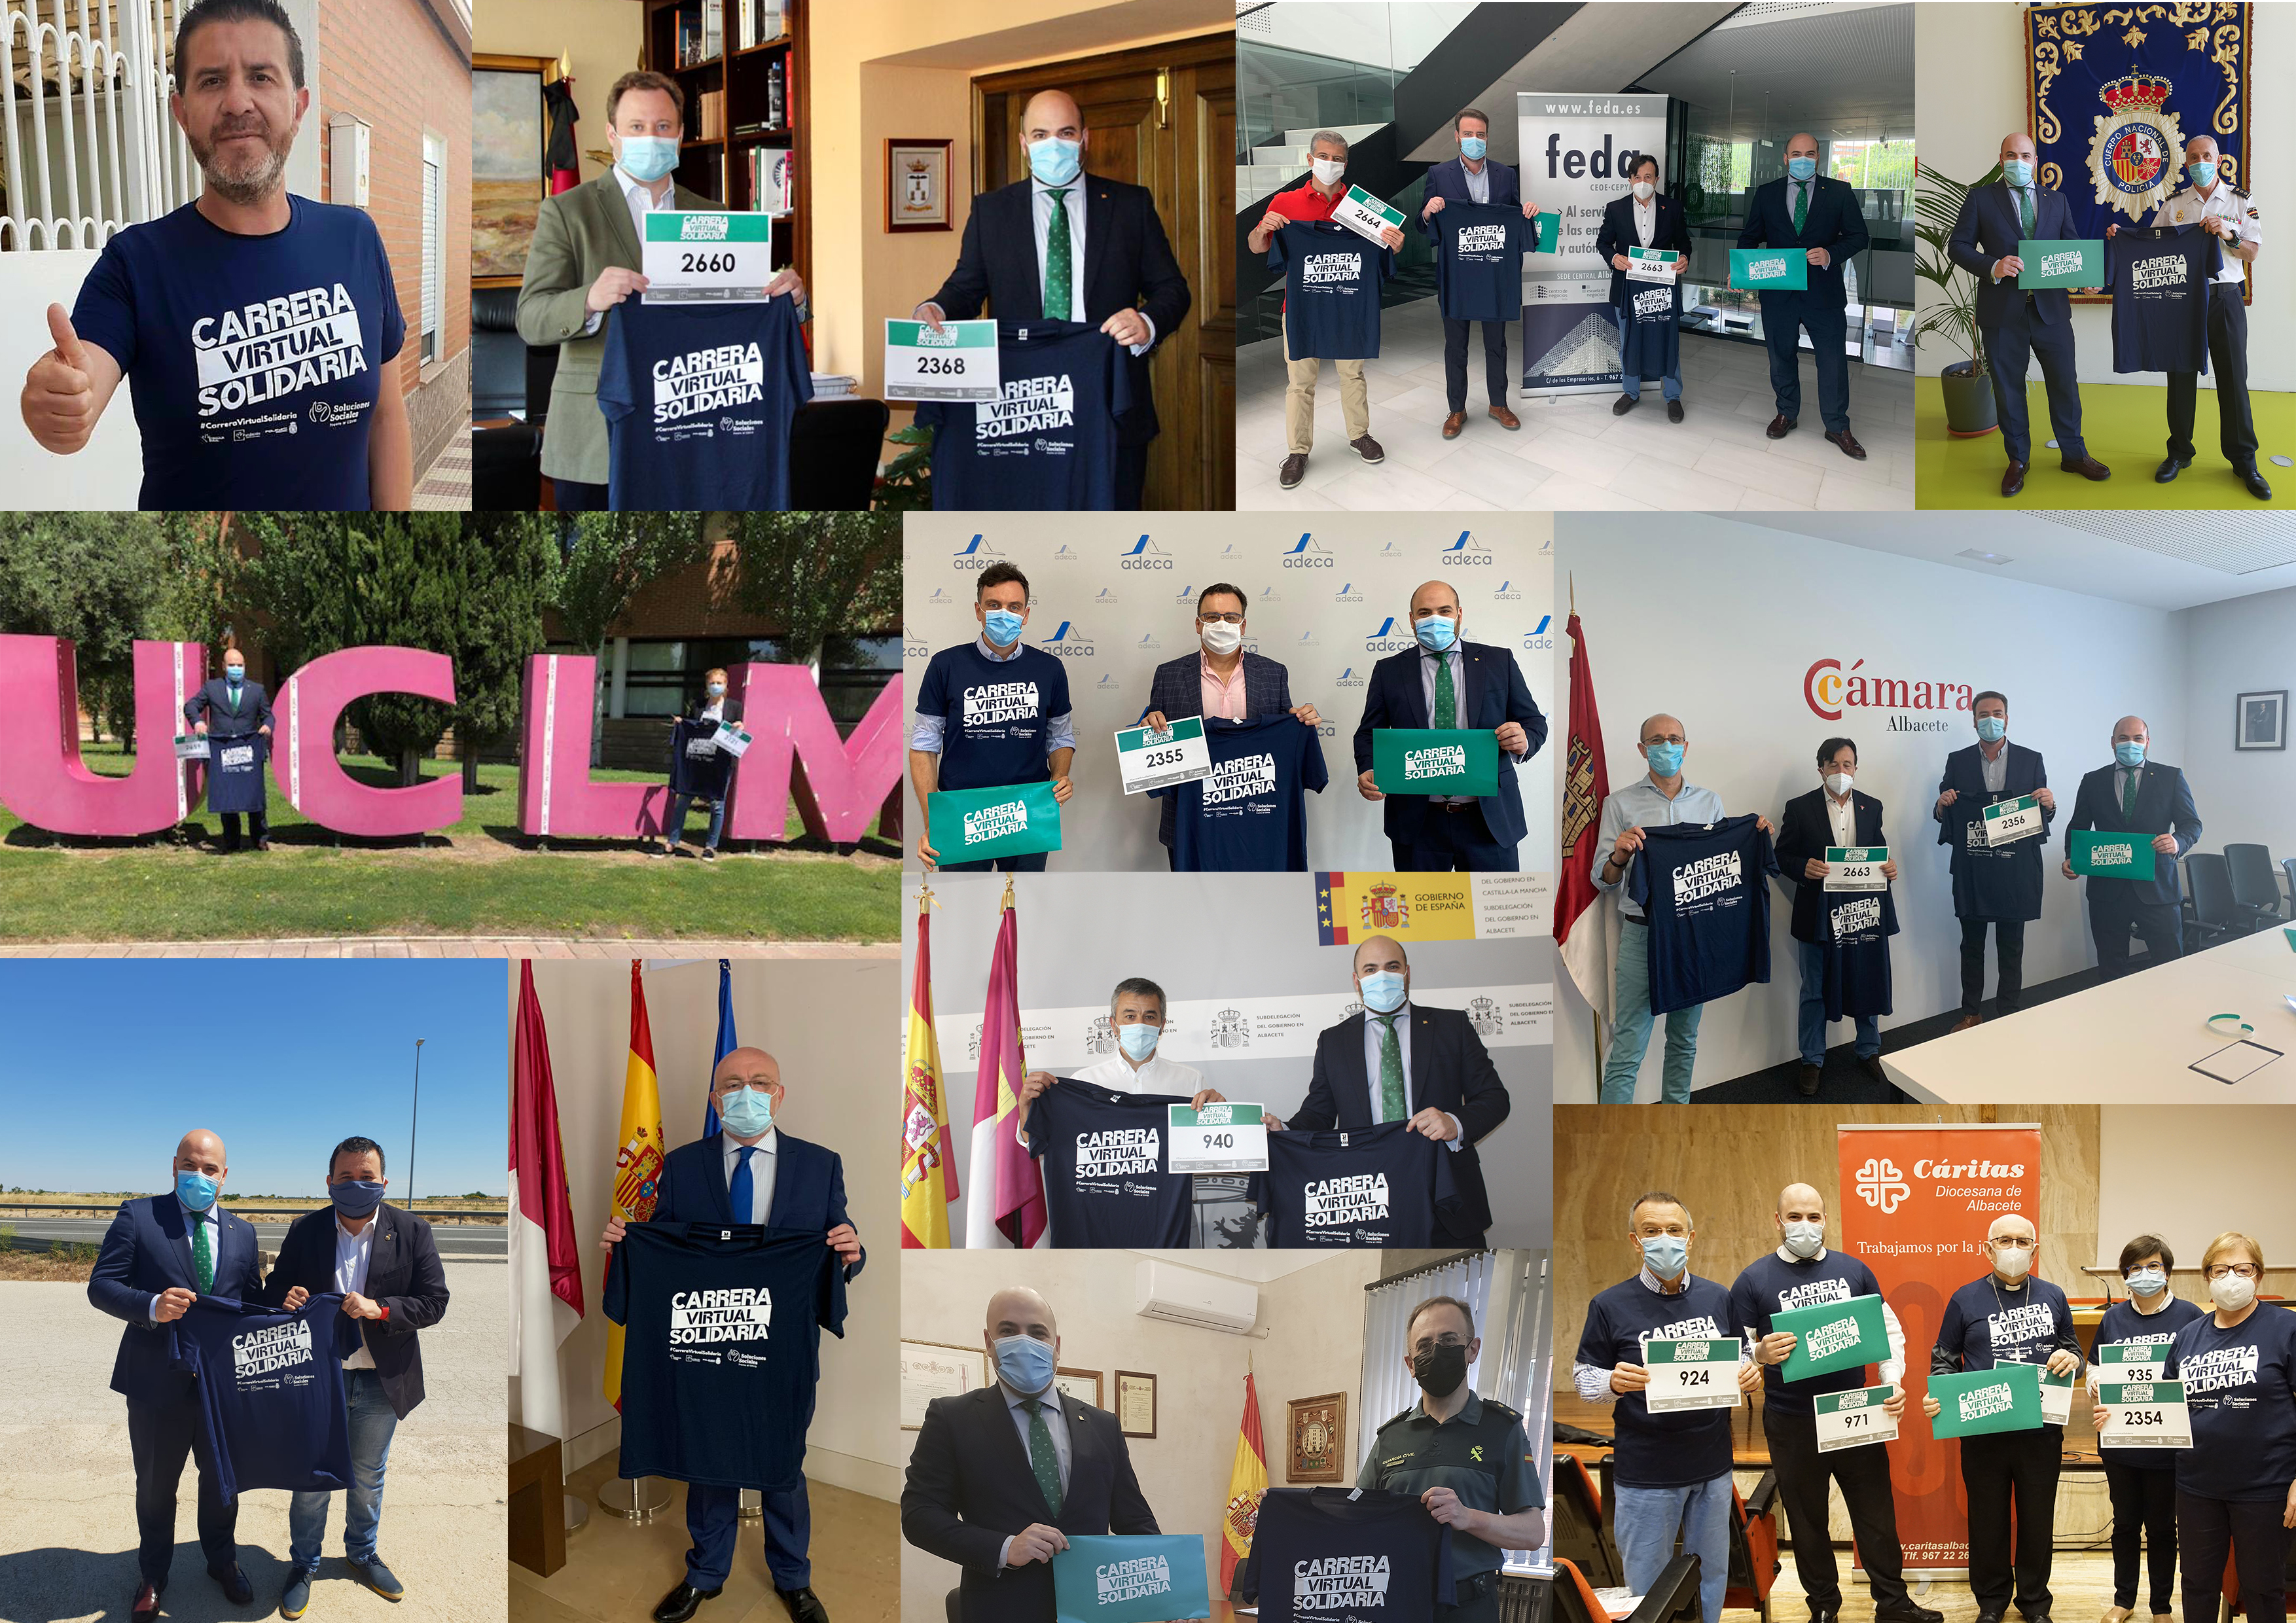 Apoyo a la carrera solidaria en Albacete